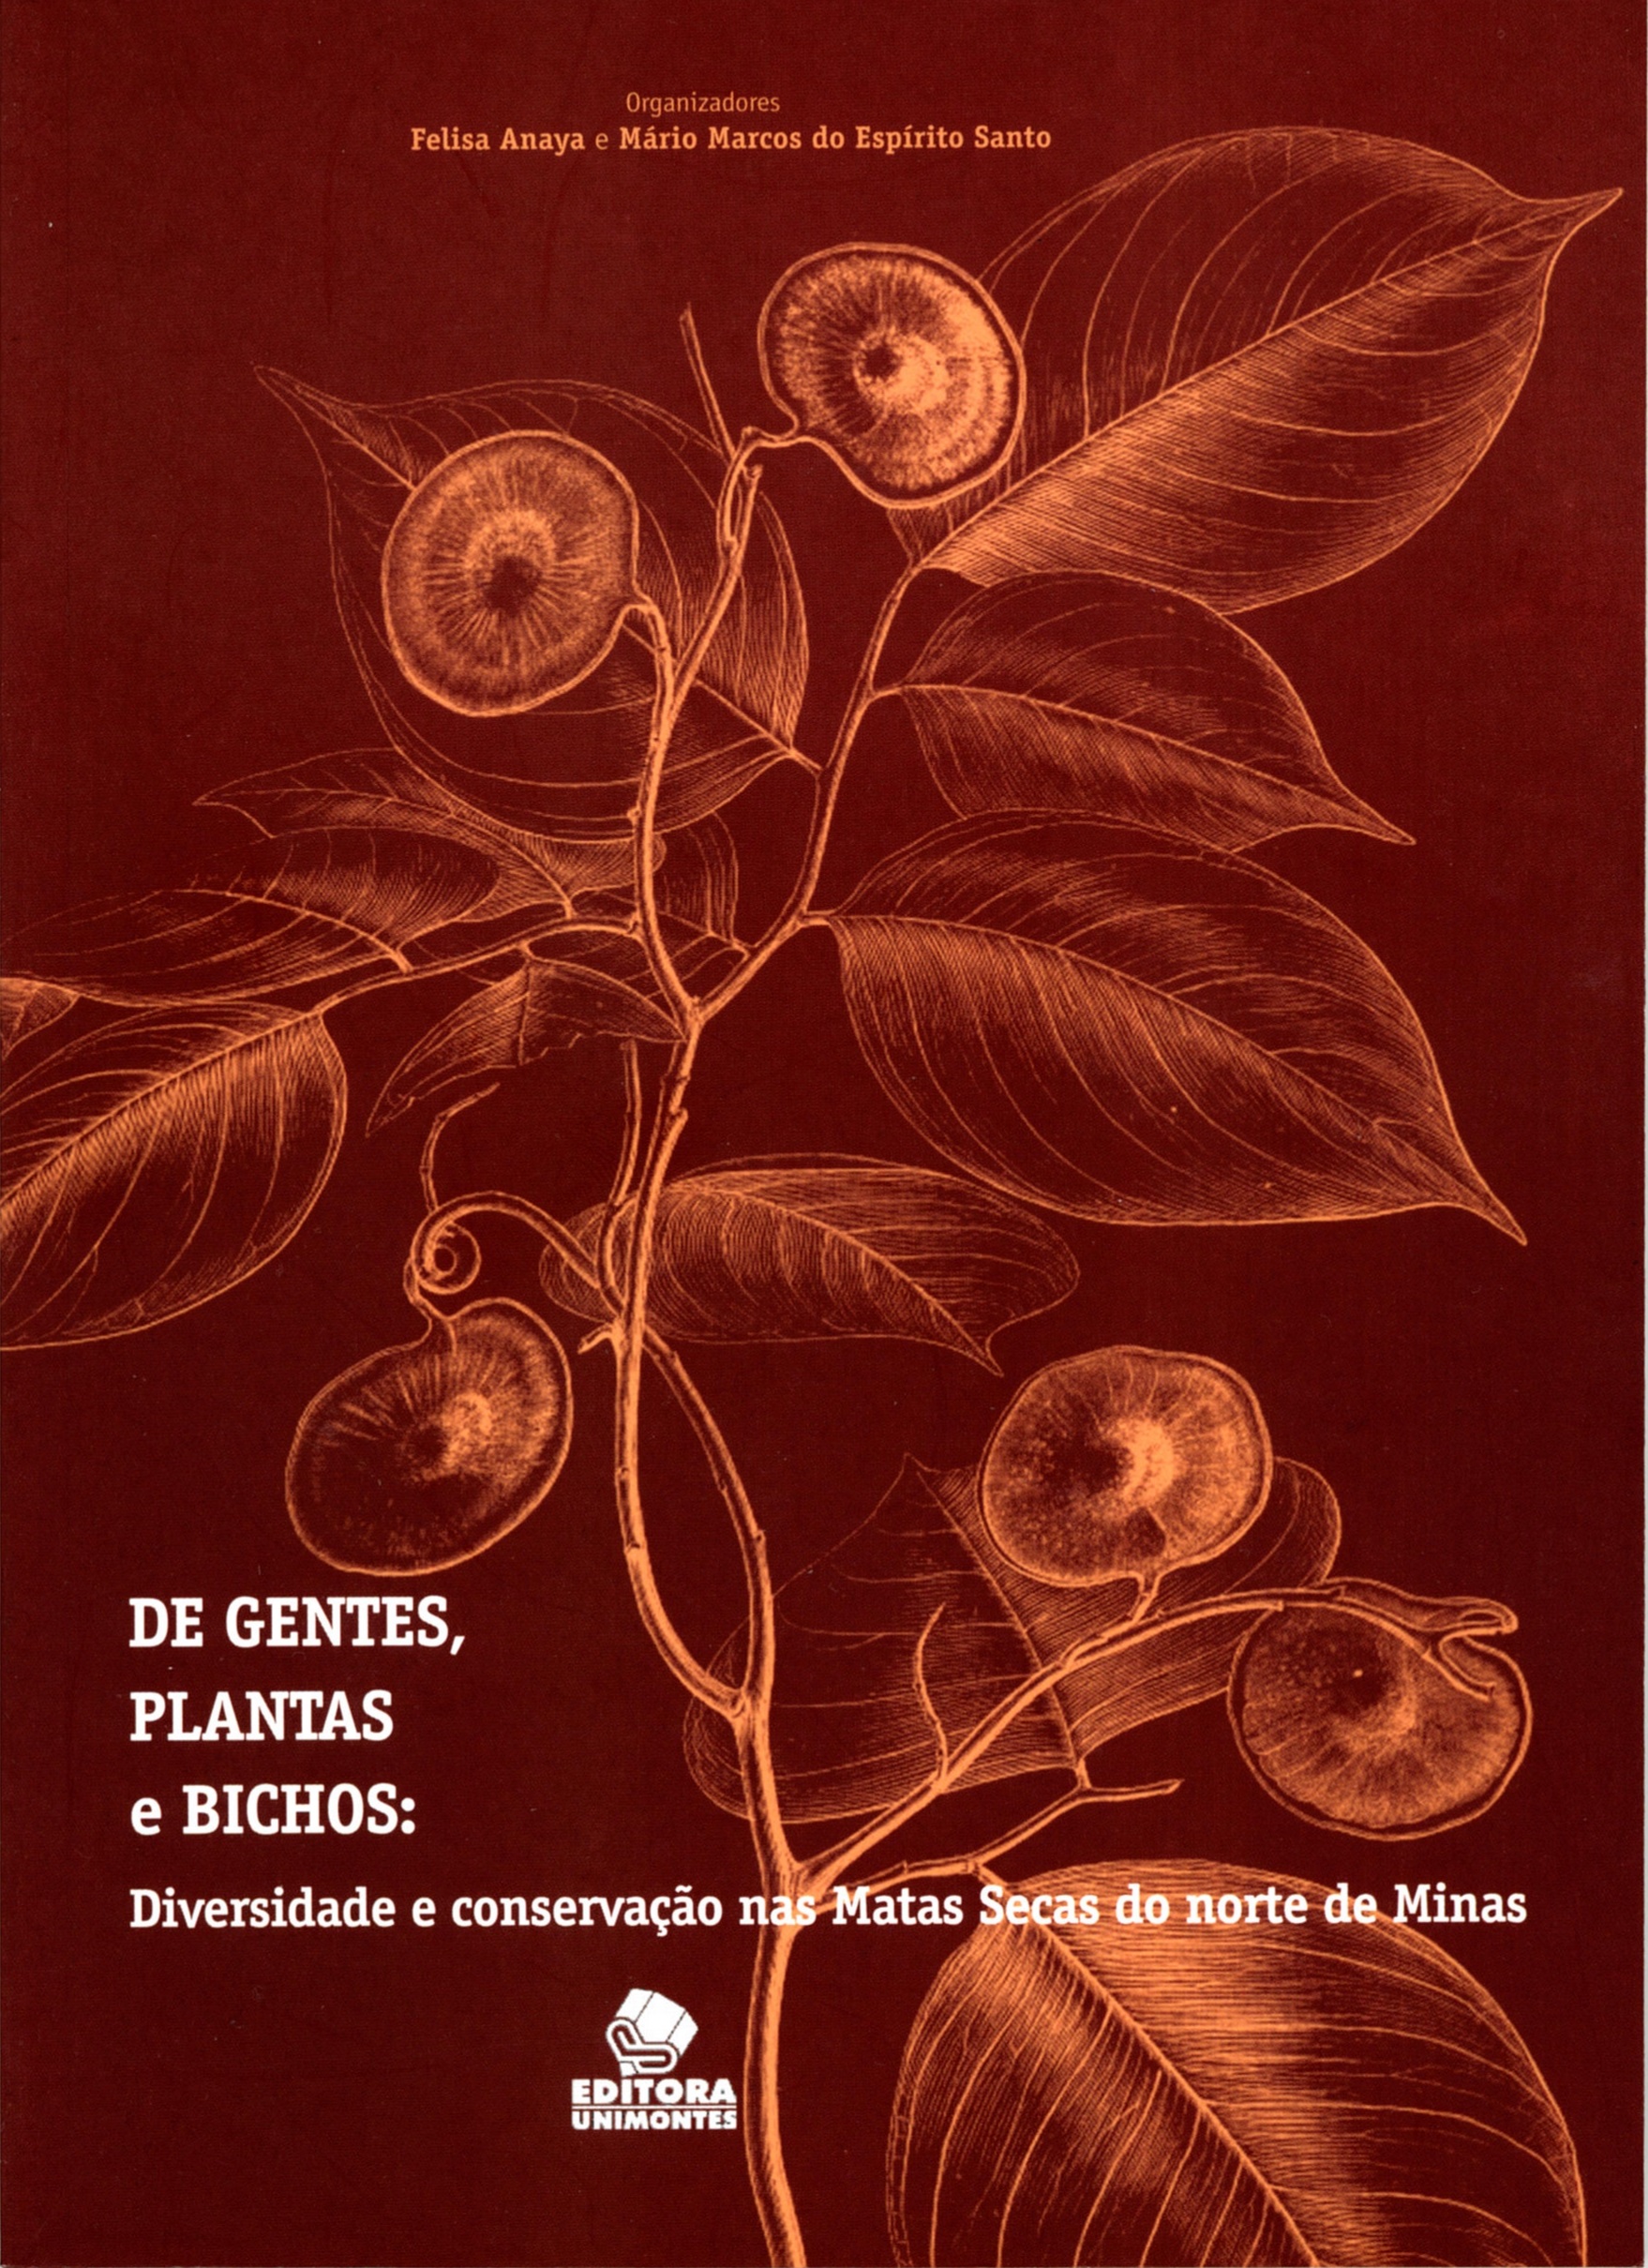 De gentes, plantas e bichos: Diversidade e conservação nas Matas Secas do norte de Minas